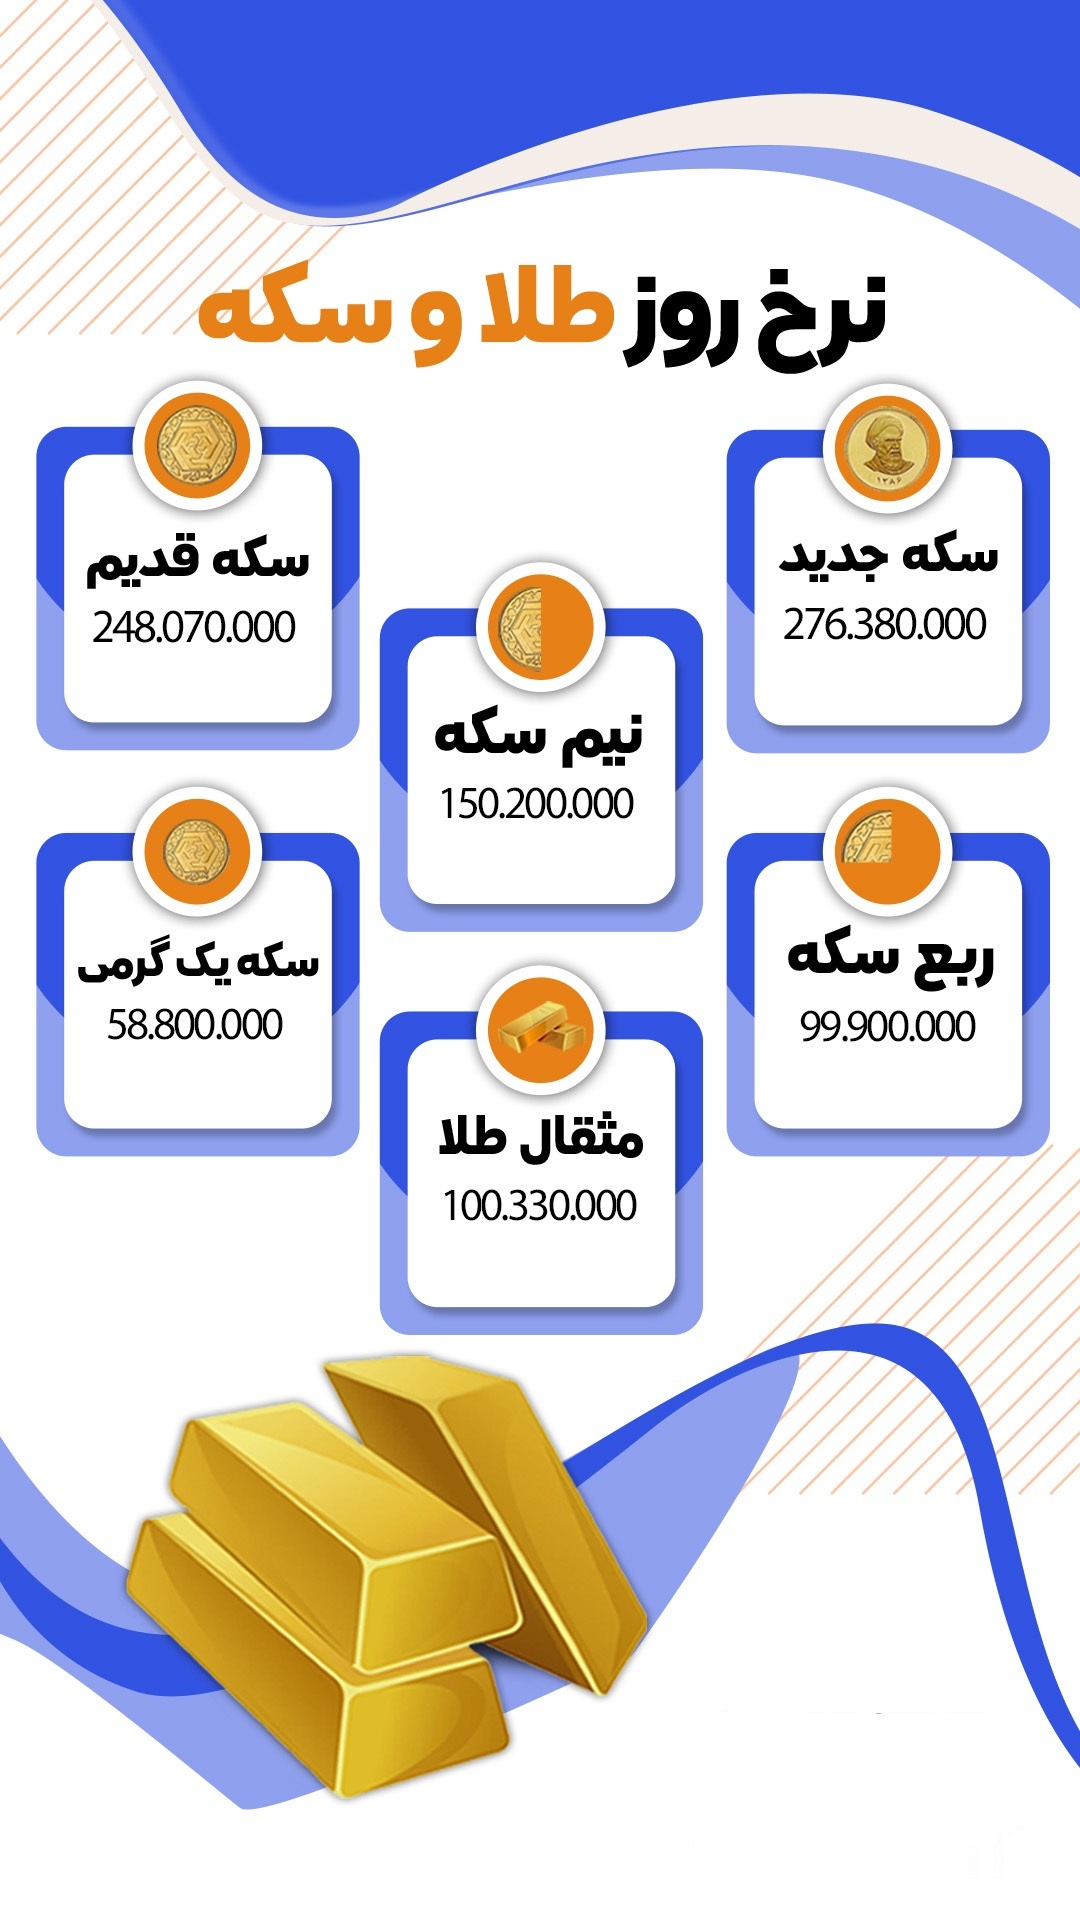 قیمت روز سکه و طلا در بازار (۳ مهر) + اینفوگرافی